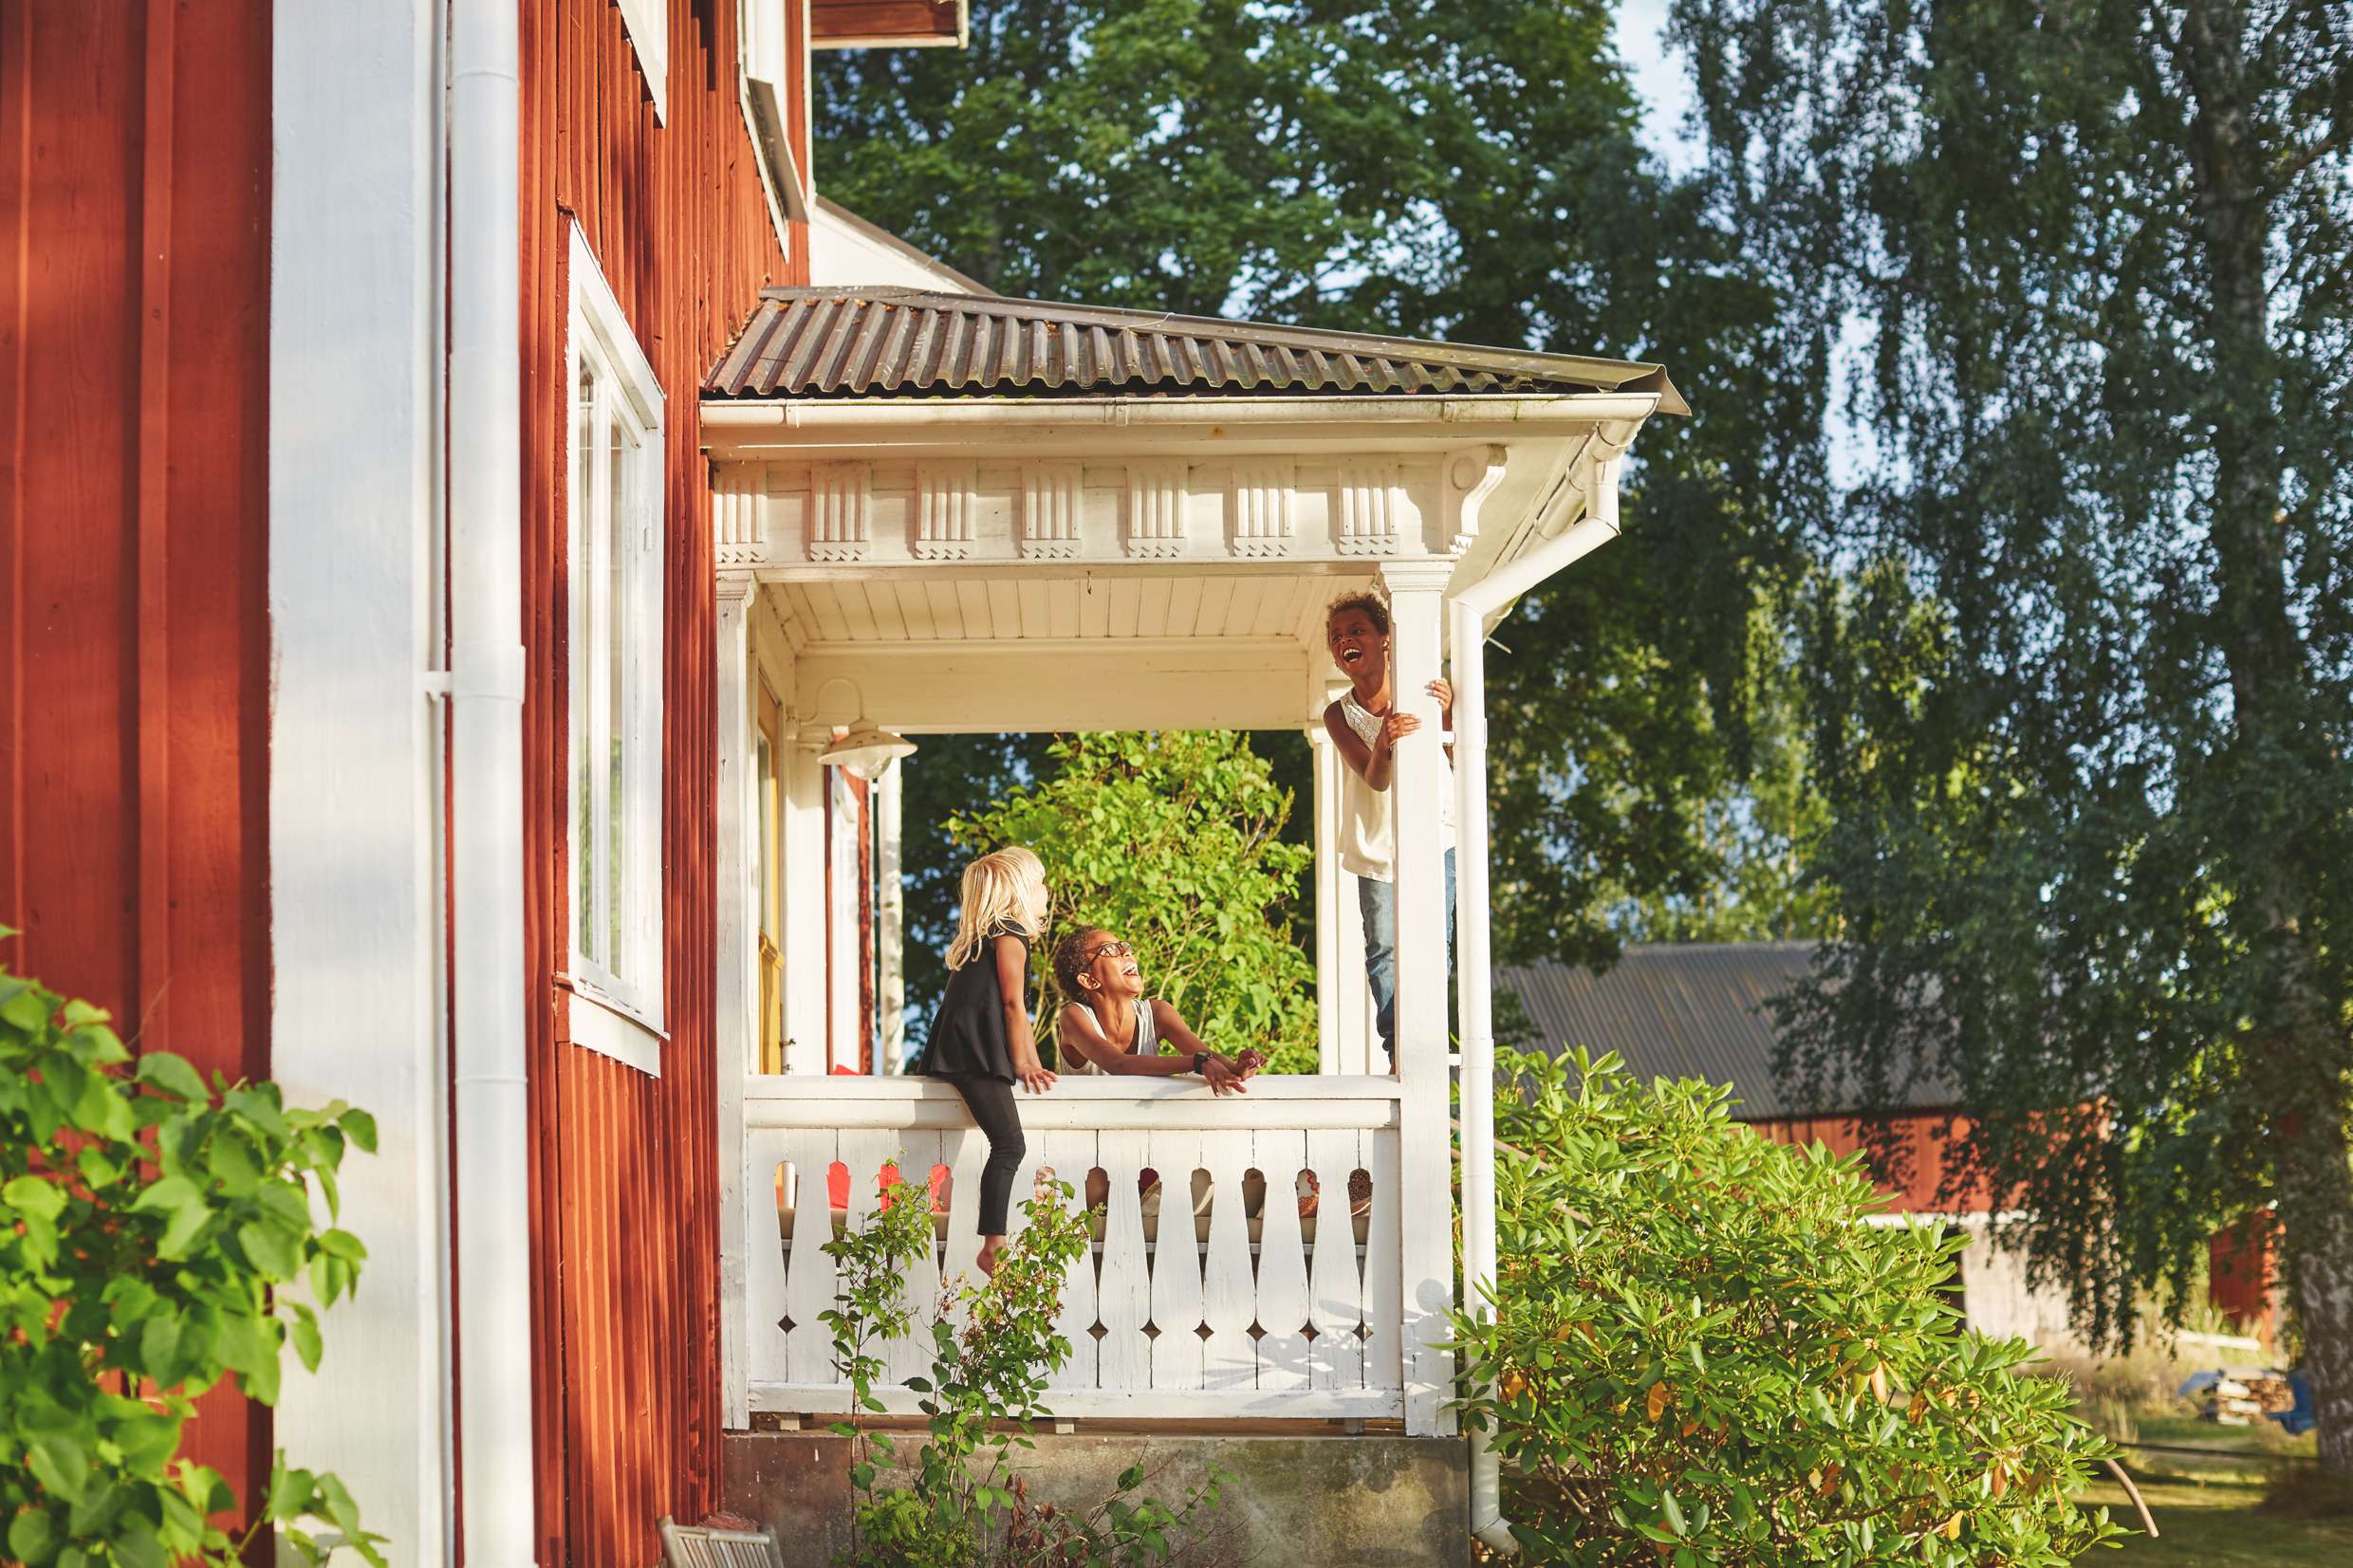 Tre barn leker på verandan till ett rött hus med vita knutar. Träden omkring blommar och solen lyser.